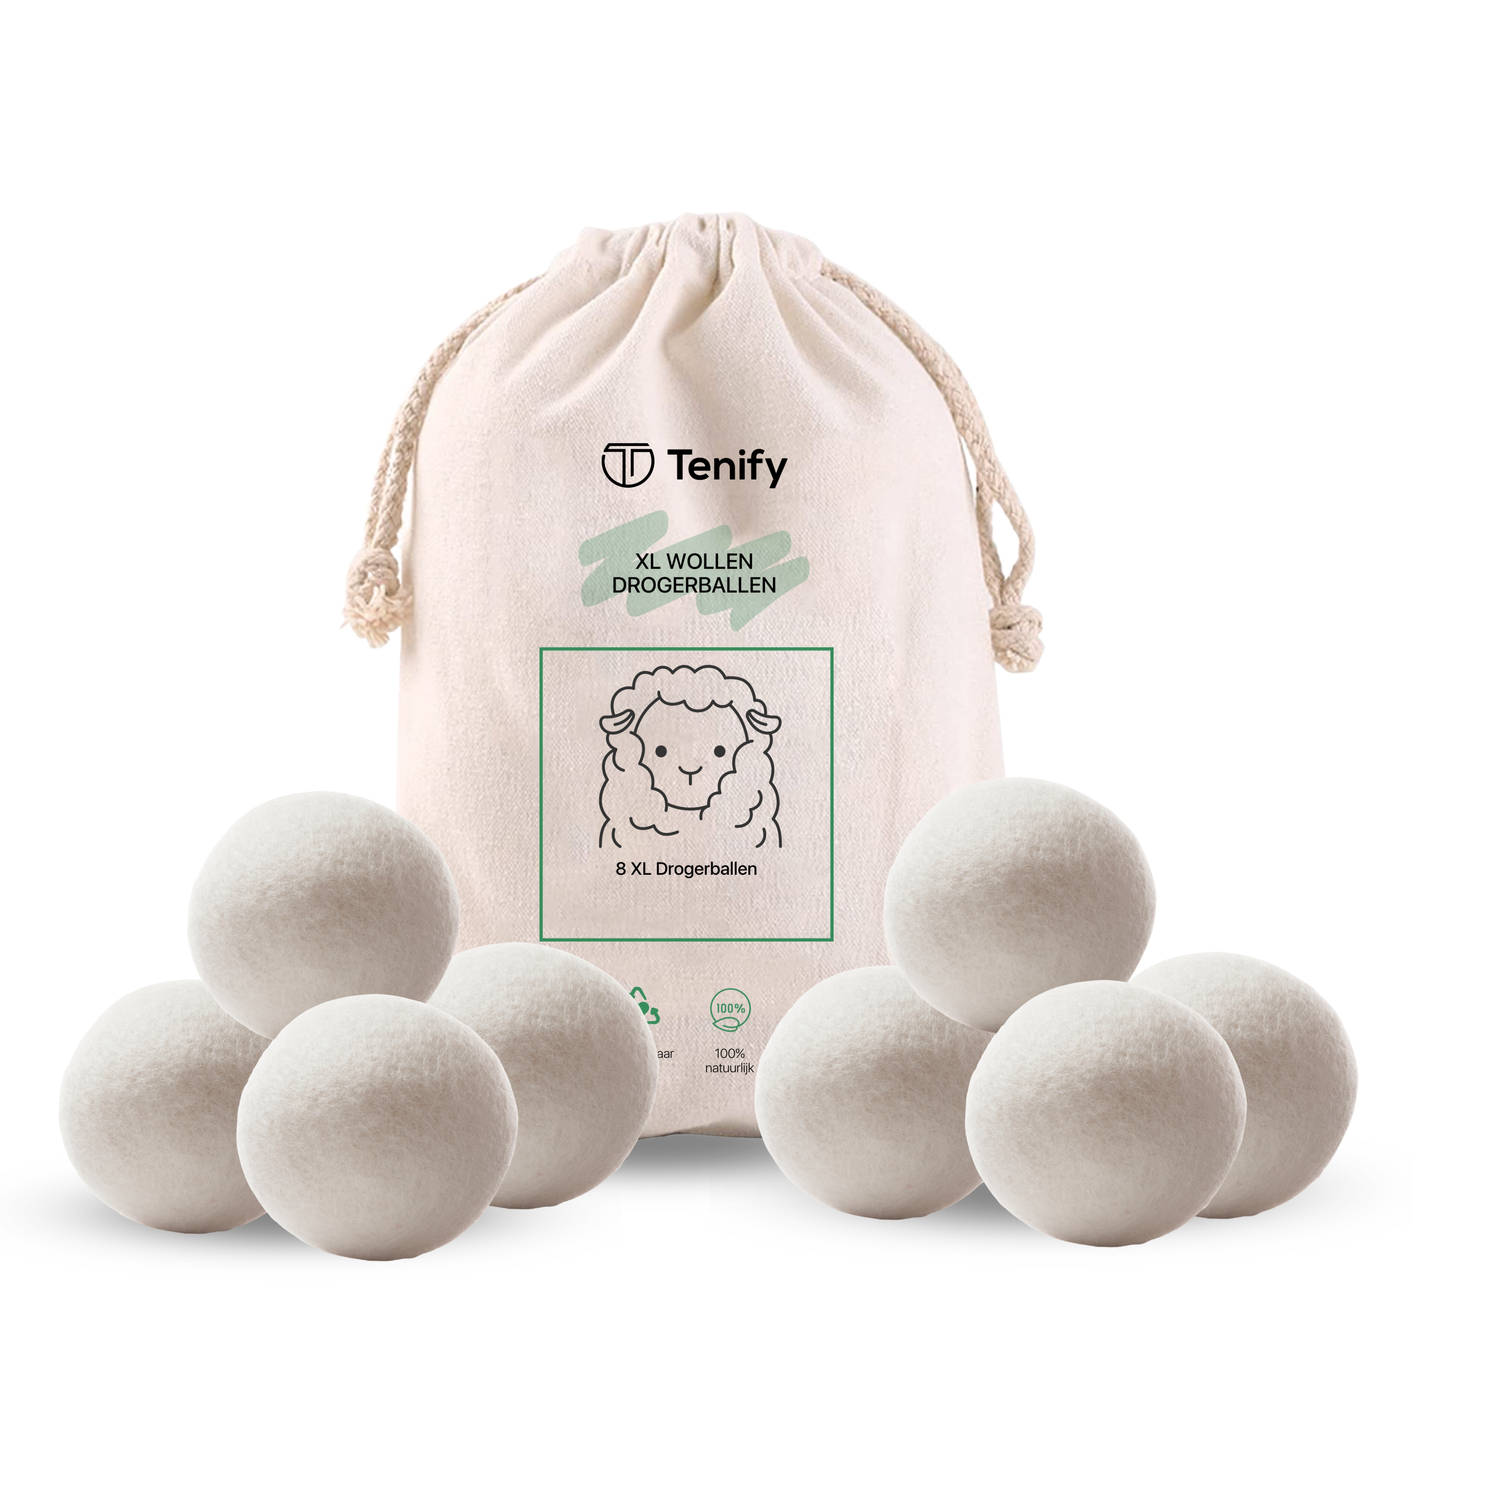 Tenify 8 XL Drogerballen - Wasbollen - Duurzaam - Schaapswol - Wasverzachter - Wasdrogerballen - Herbruikbare Droogballen - Energie Besparen